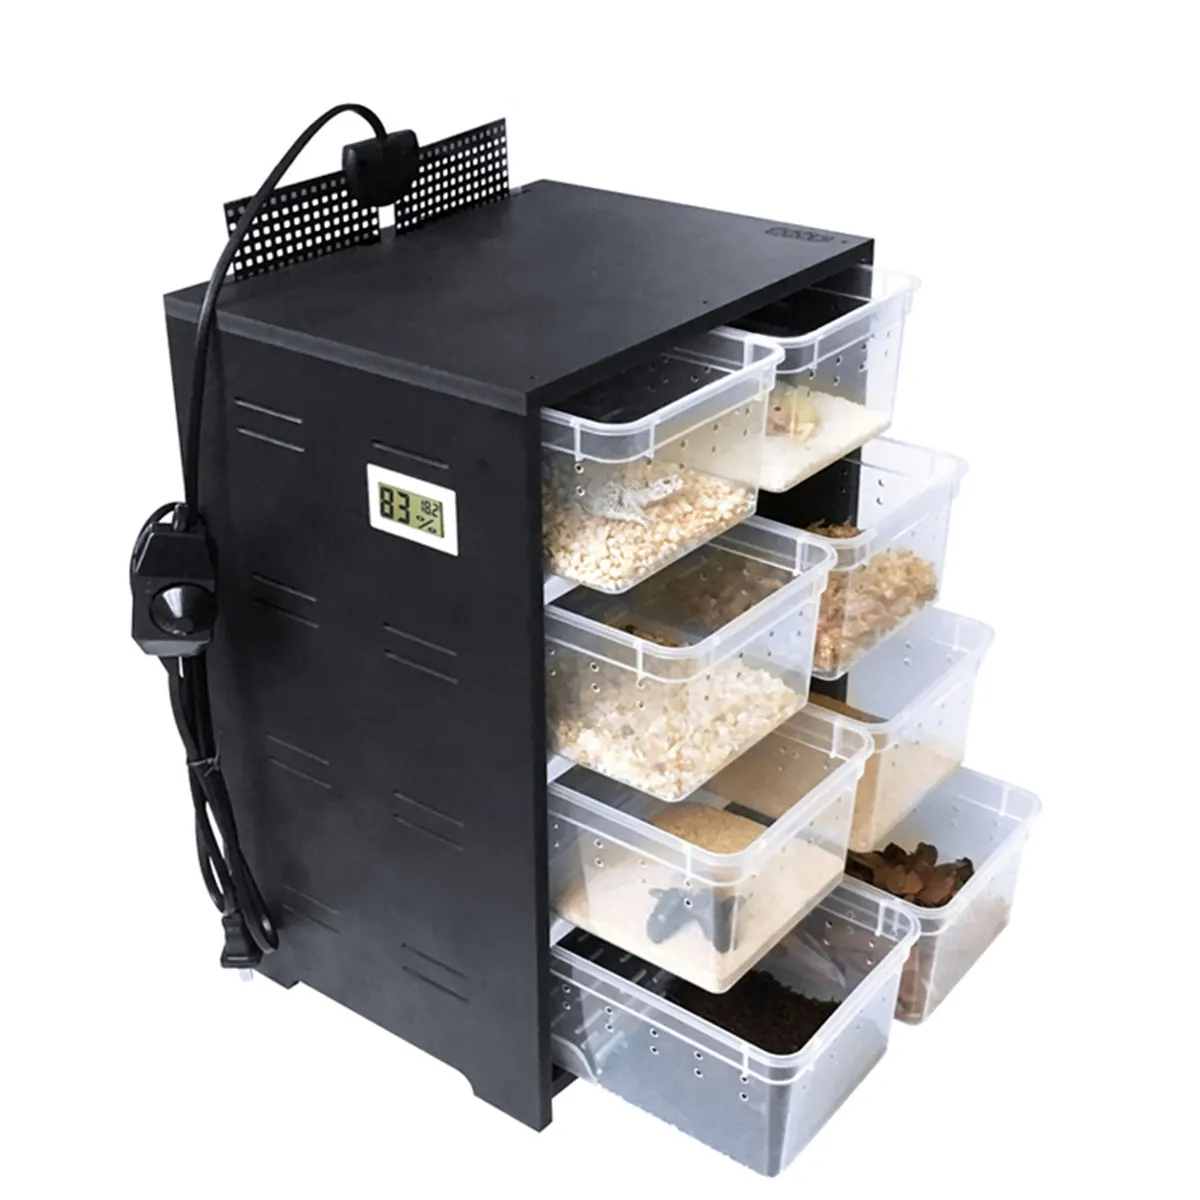 Акриловый контейнер для кормления домашних животных, 4-уровневый контейнер для террариума для разведения насекомых, ящериц, ящик для дома с ... от AliExpress RU&CIS NEW